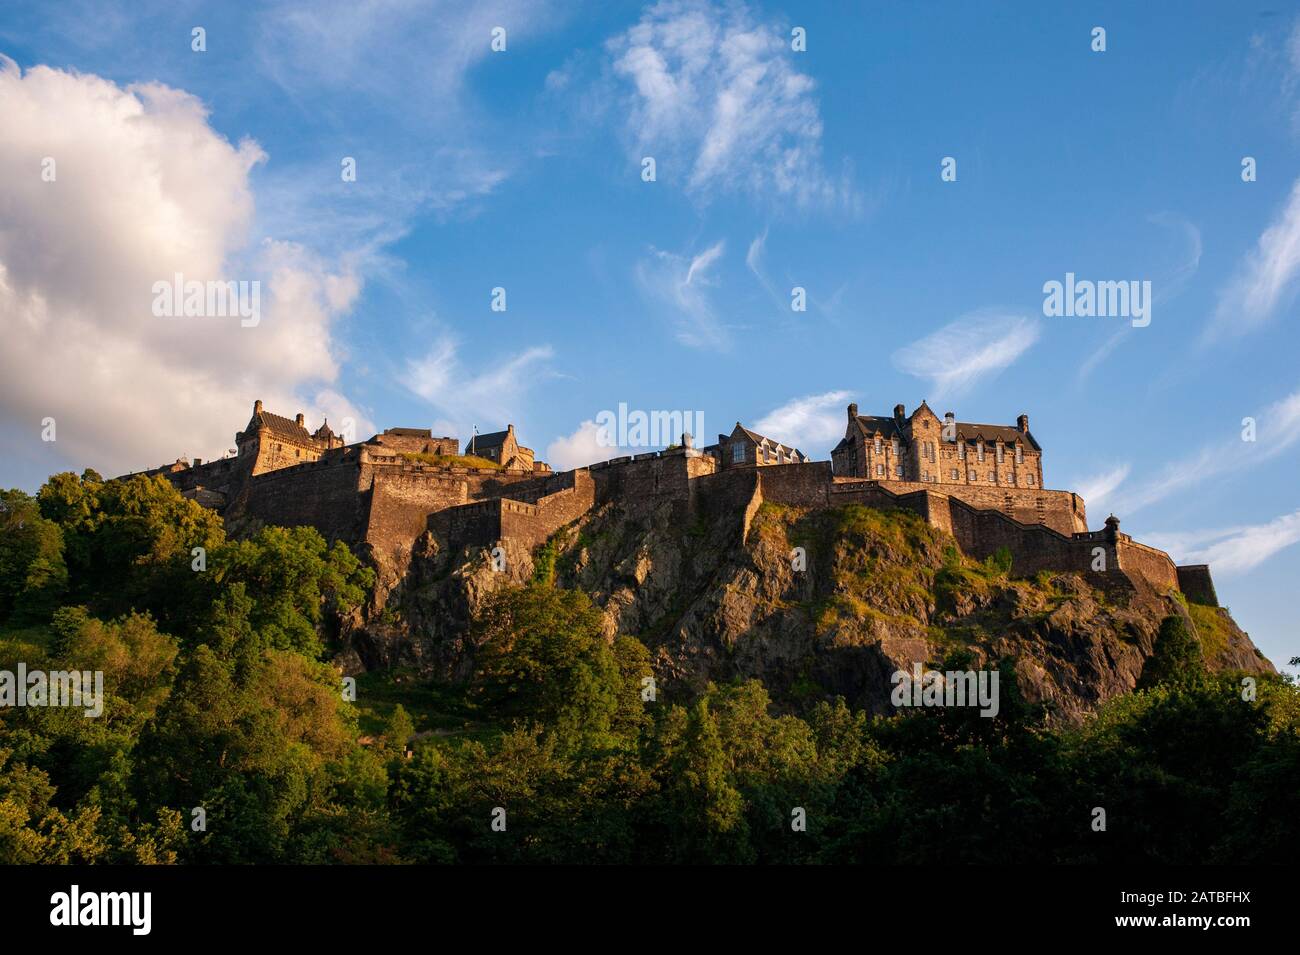 Schloss Edinburgh, von den Gärten der Princes Street aus gesehen. Stadtbild/Reisefotografie von Edinburgh von Pep Masip. Stockfoto